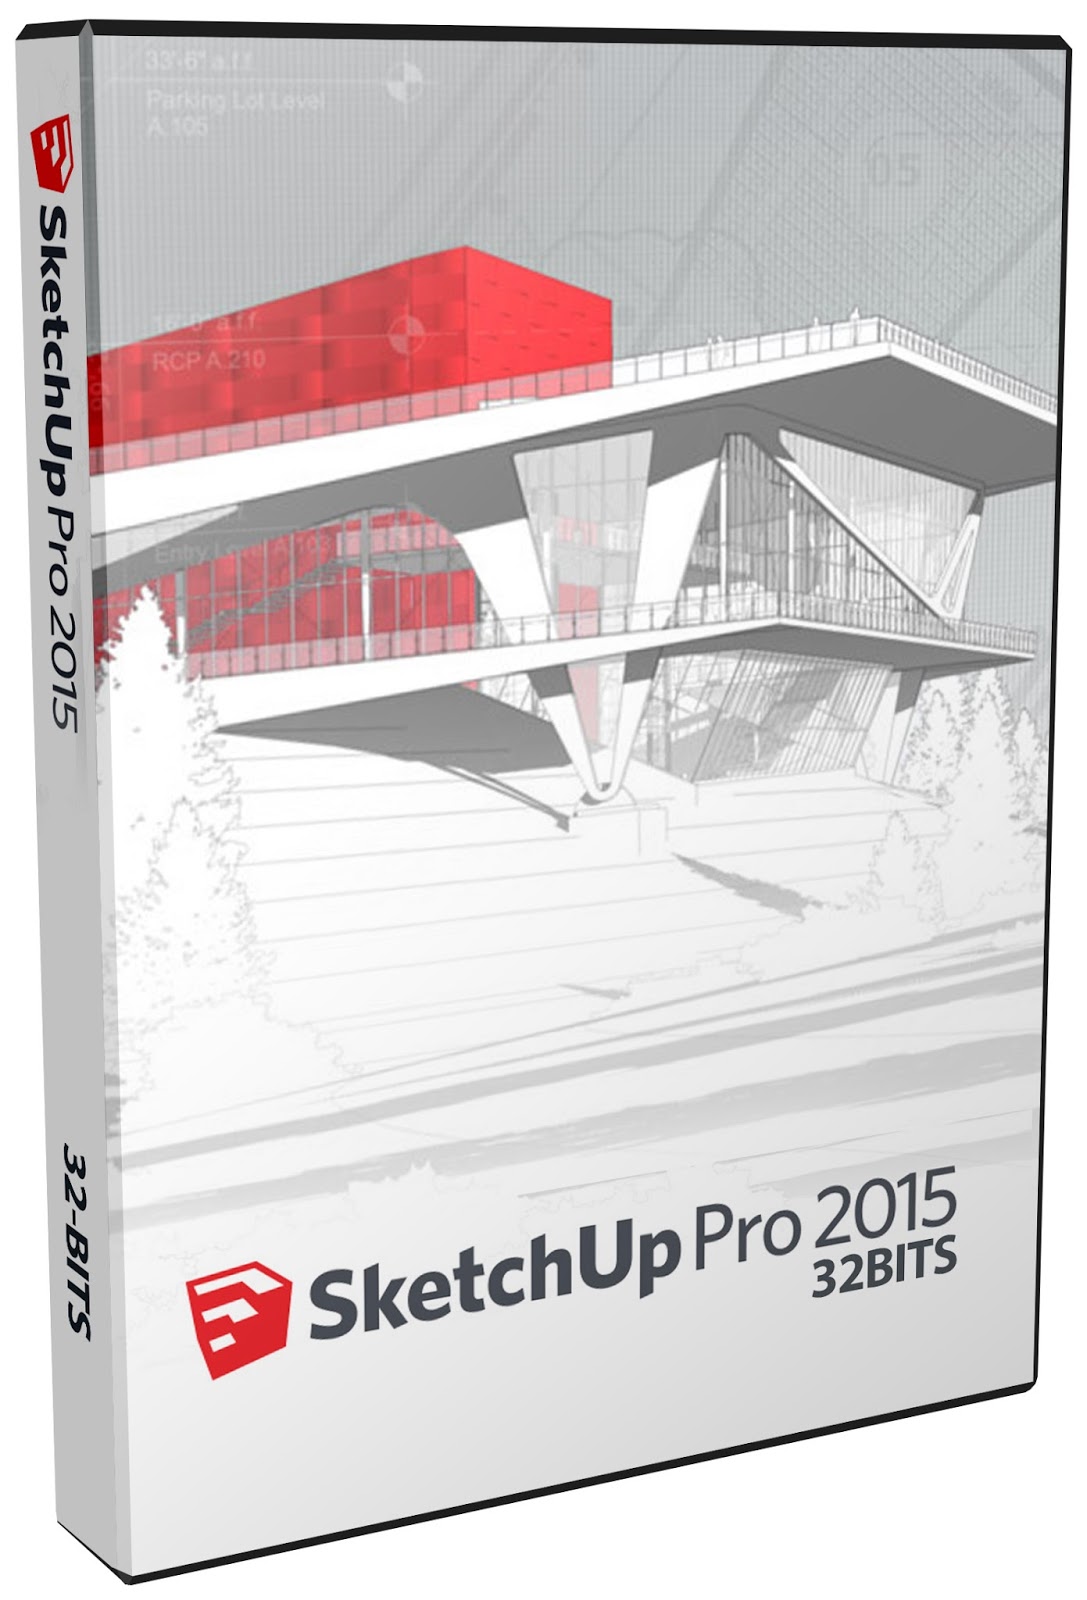 sketchup pro 2015 free download 64 bit